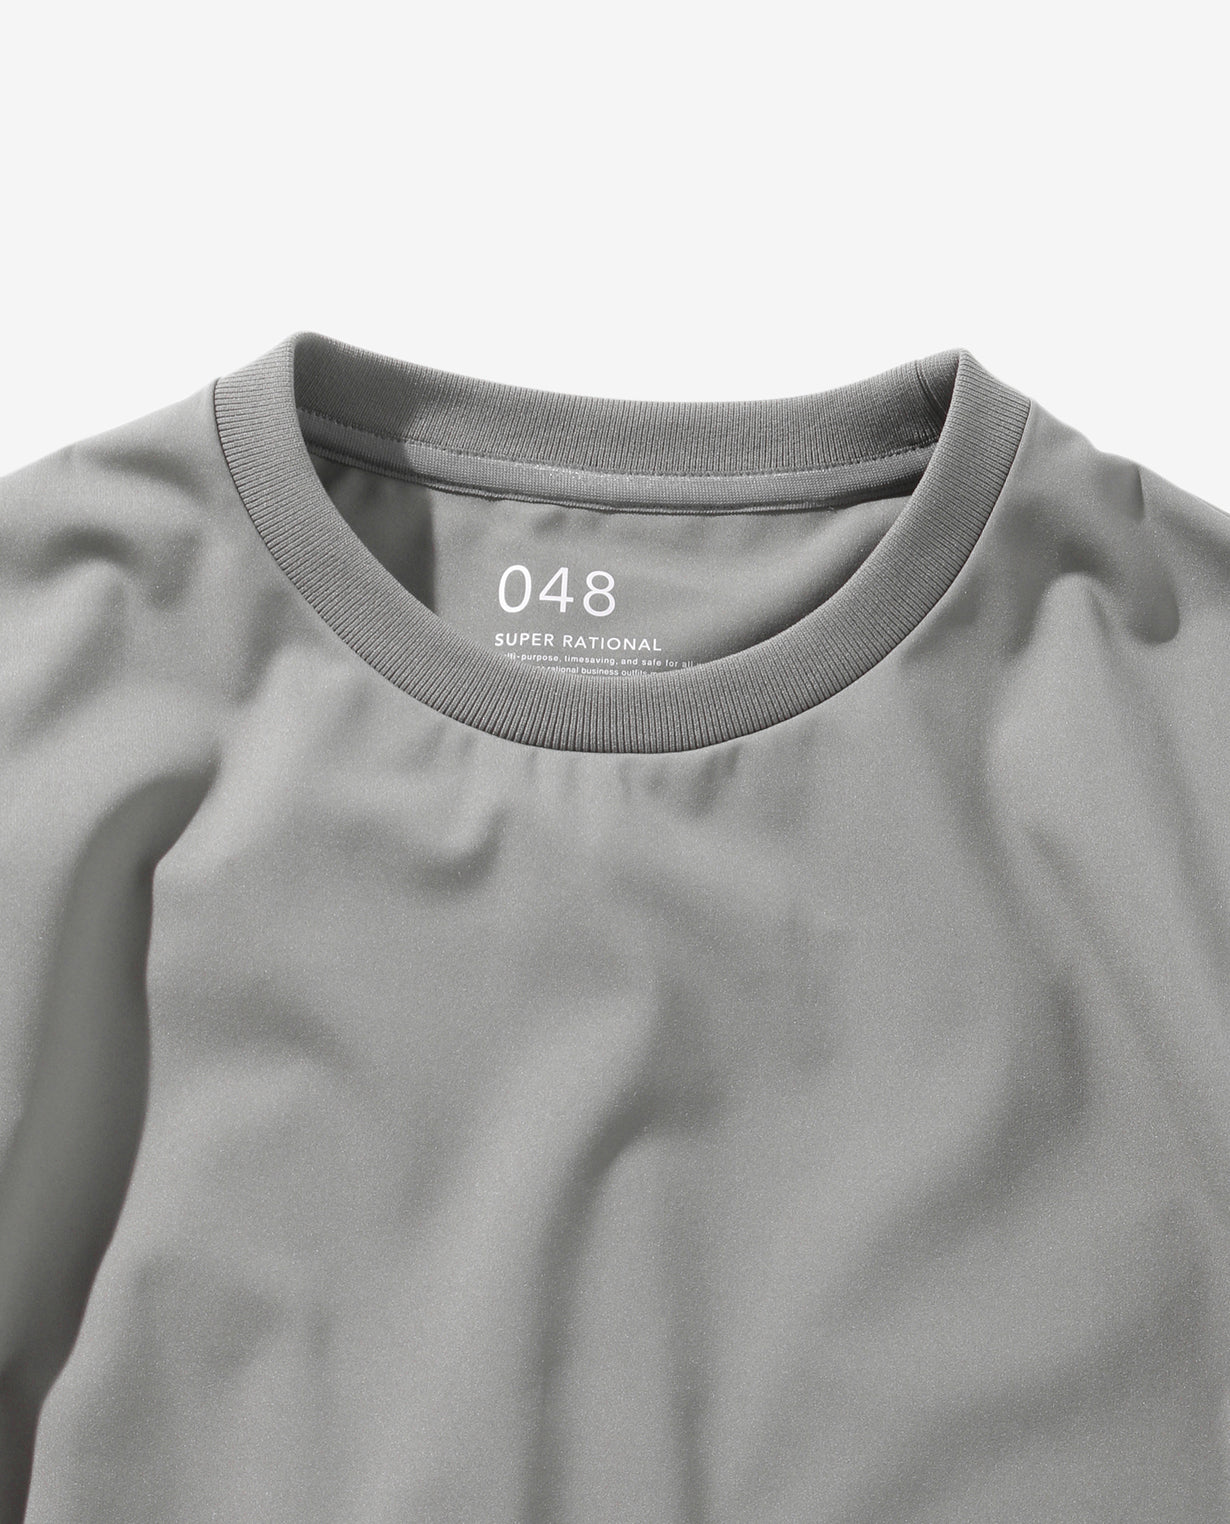 ■モスグレー×メトロポリスカモ 048_NA 24HR-WEARABLE 異素材コンビTシャツ